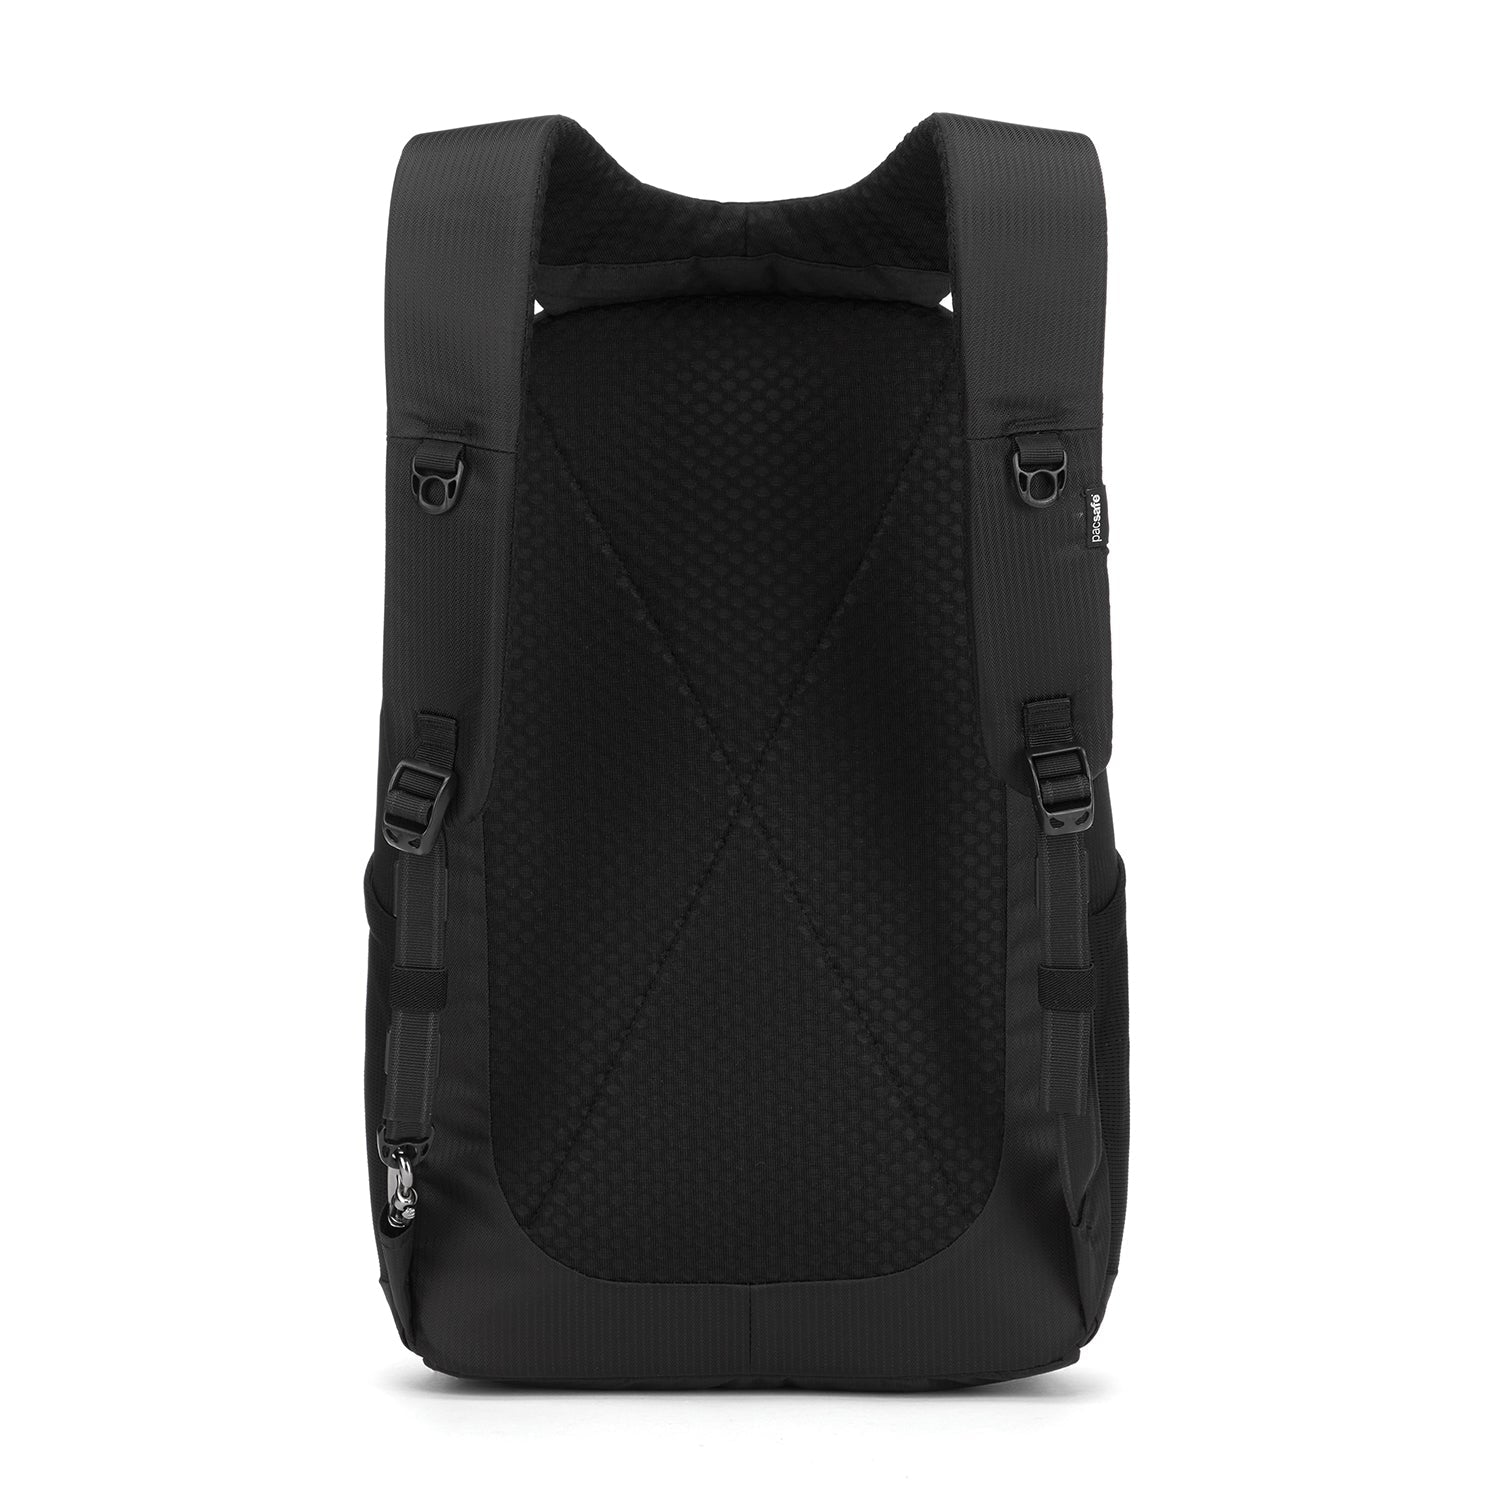 Pacsafe - LS450 Backpack - Black - 0